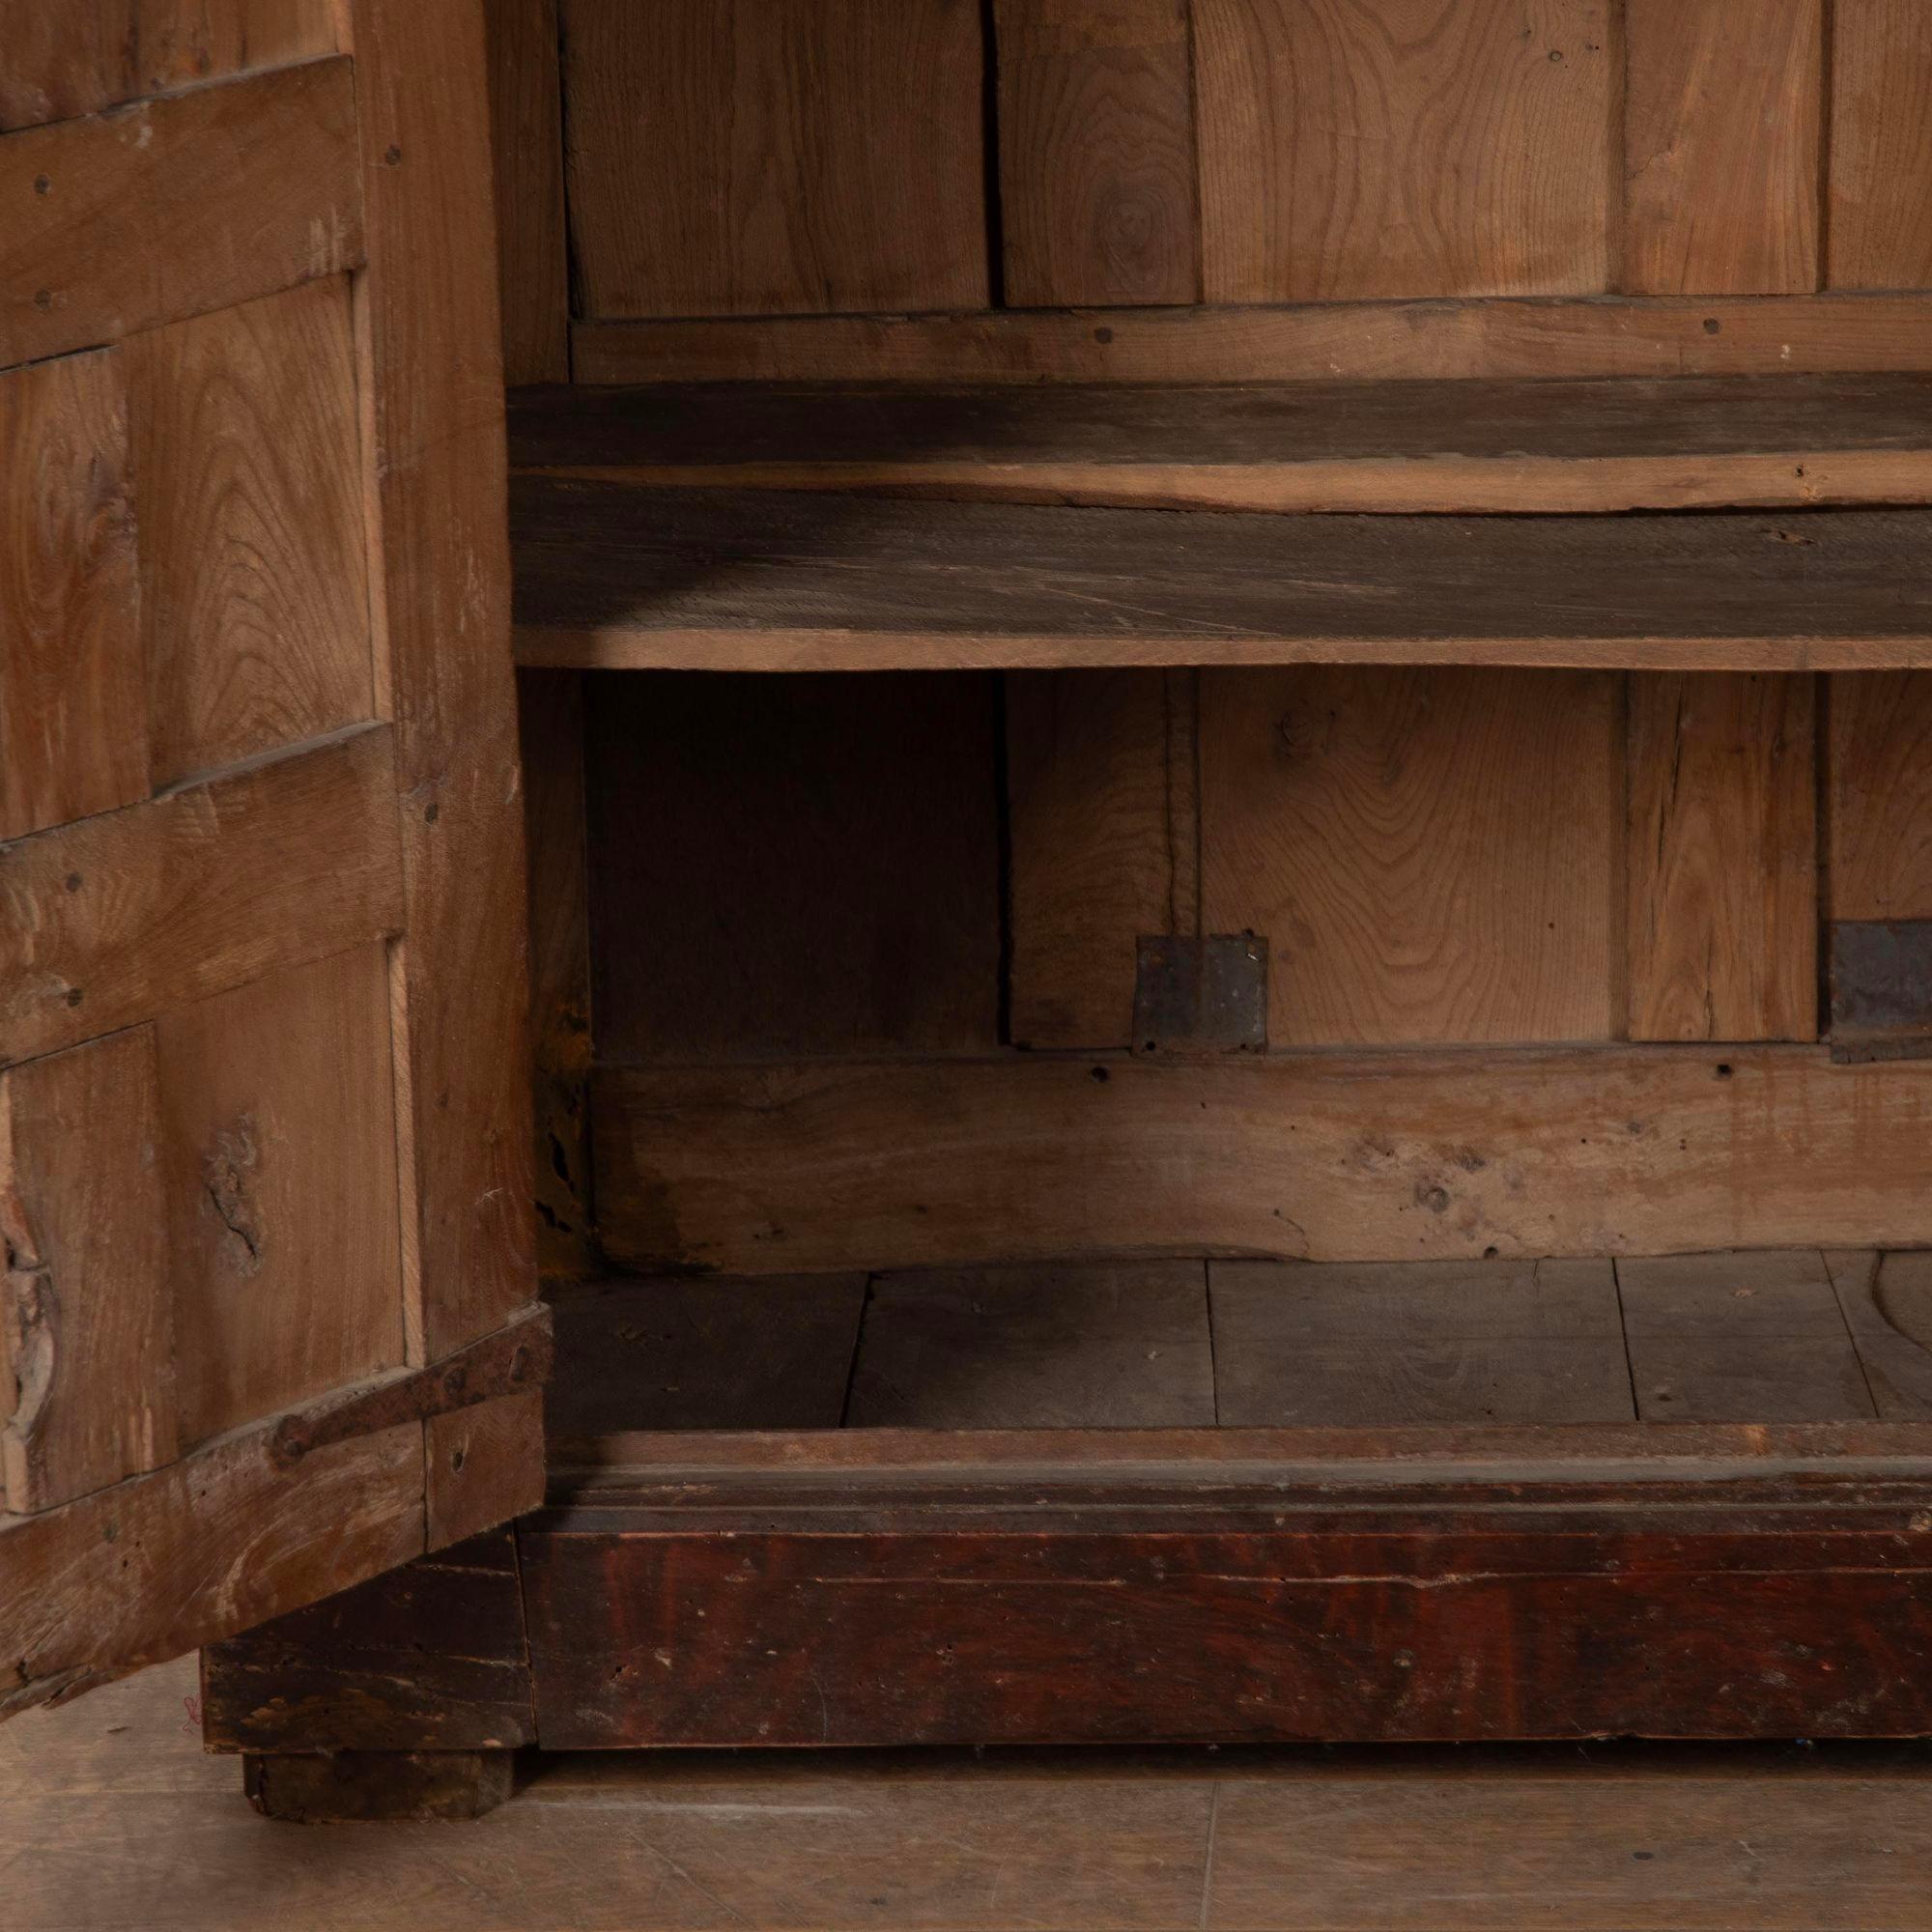 Merveilleuse armoire espagnole du 17e siècle avec finition polychrome d'origine.
Hormis quelques restaurations mineures, cette remarquable armoire est en parfait état d'origine, avec les planches supérieures et inférieures, la hauteur des pieds et